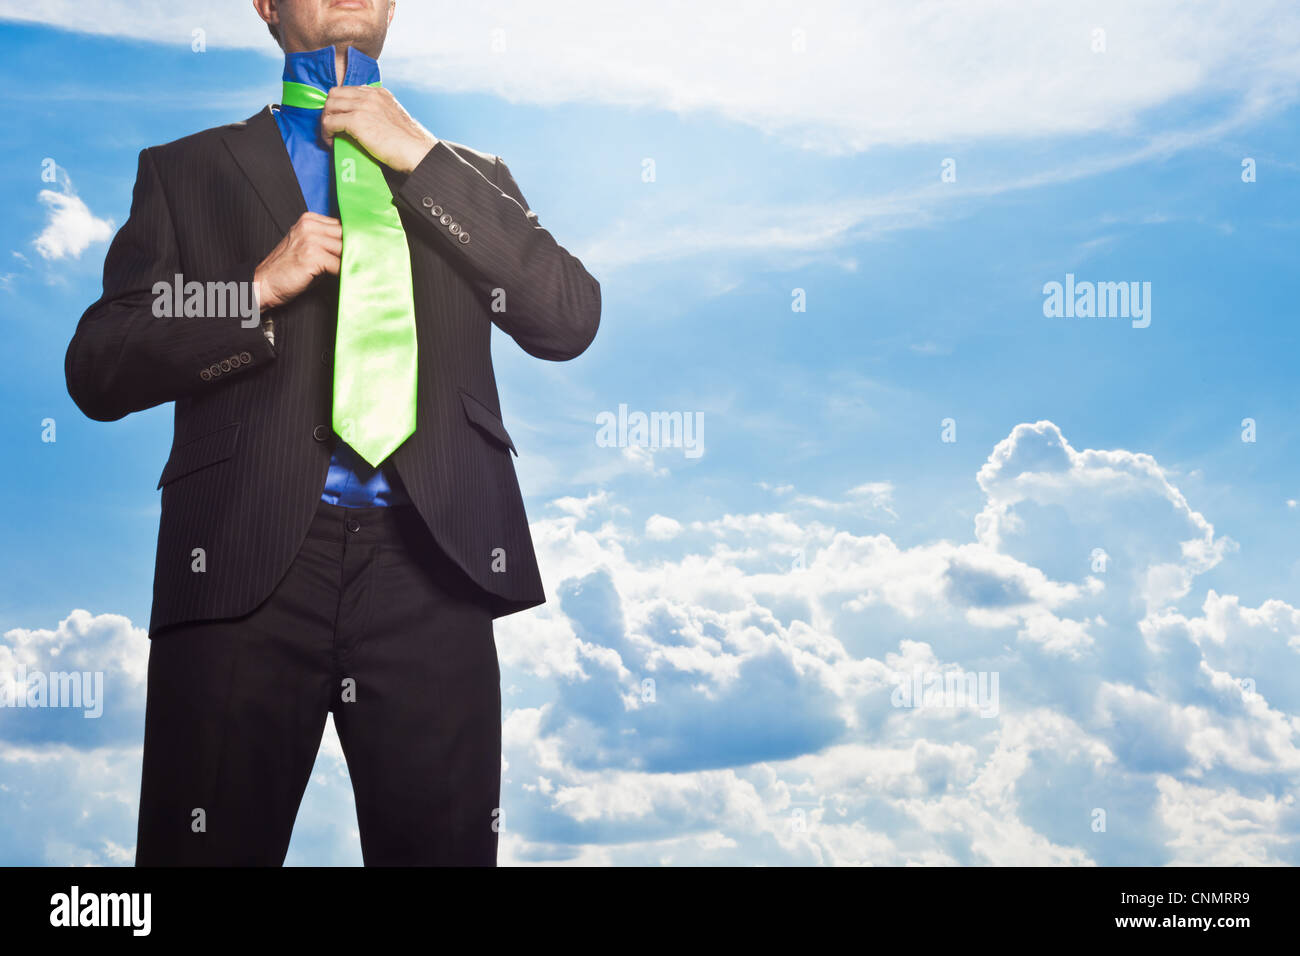 Businessman tying sa cravate en plein air Banque D'Images